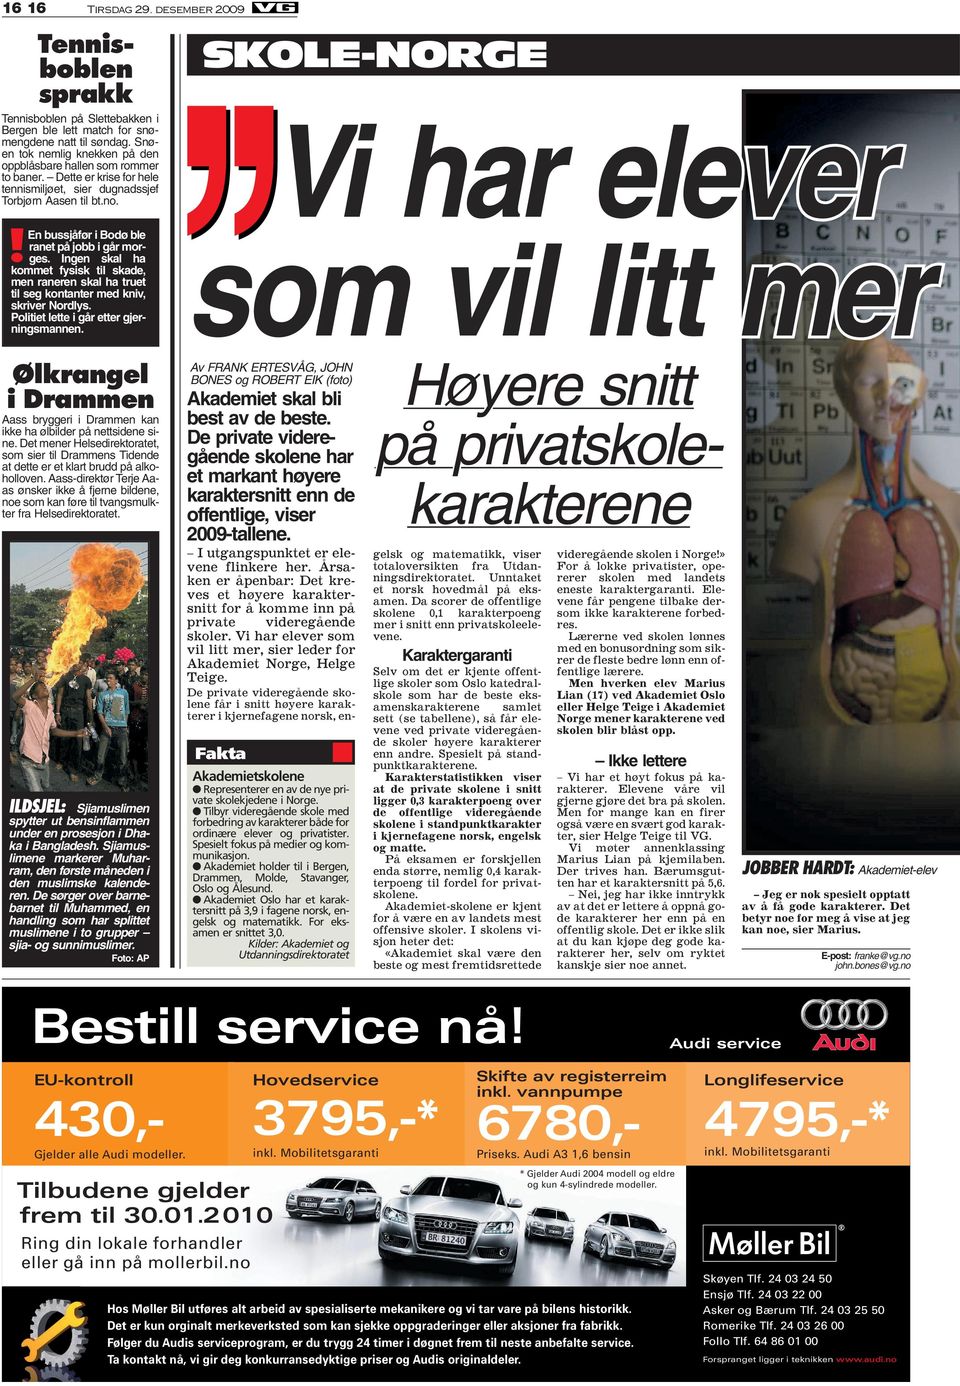 en bussjåfør i Bodø ble ranet på jobb i går morges. Ingen skal ha kommet fysisk til skade, men raneren skal ha truet til seg kontanter med kniv, skriver Nordlys.